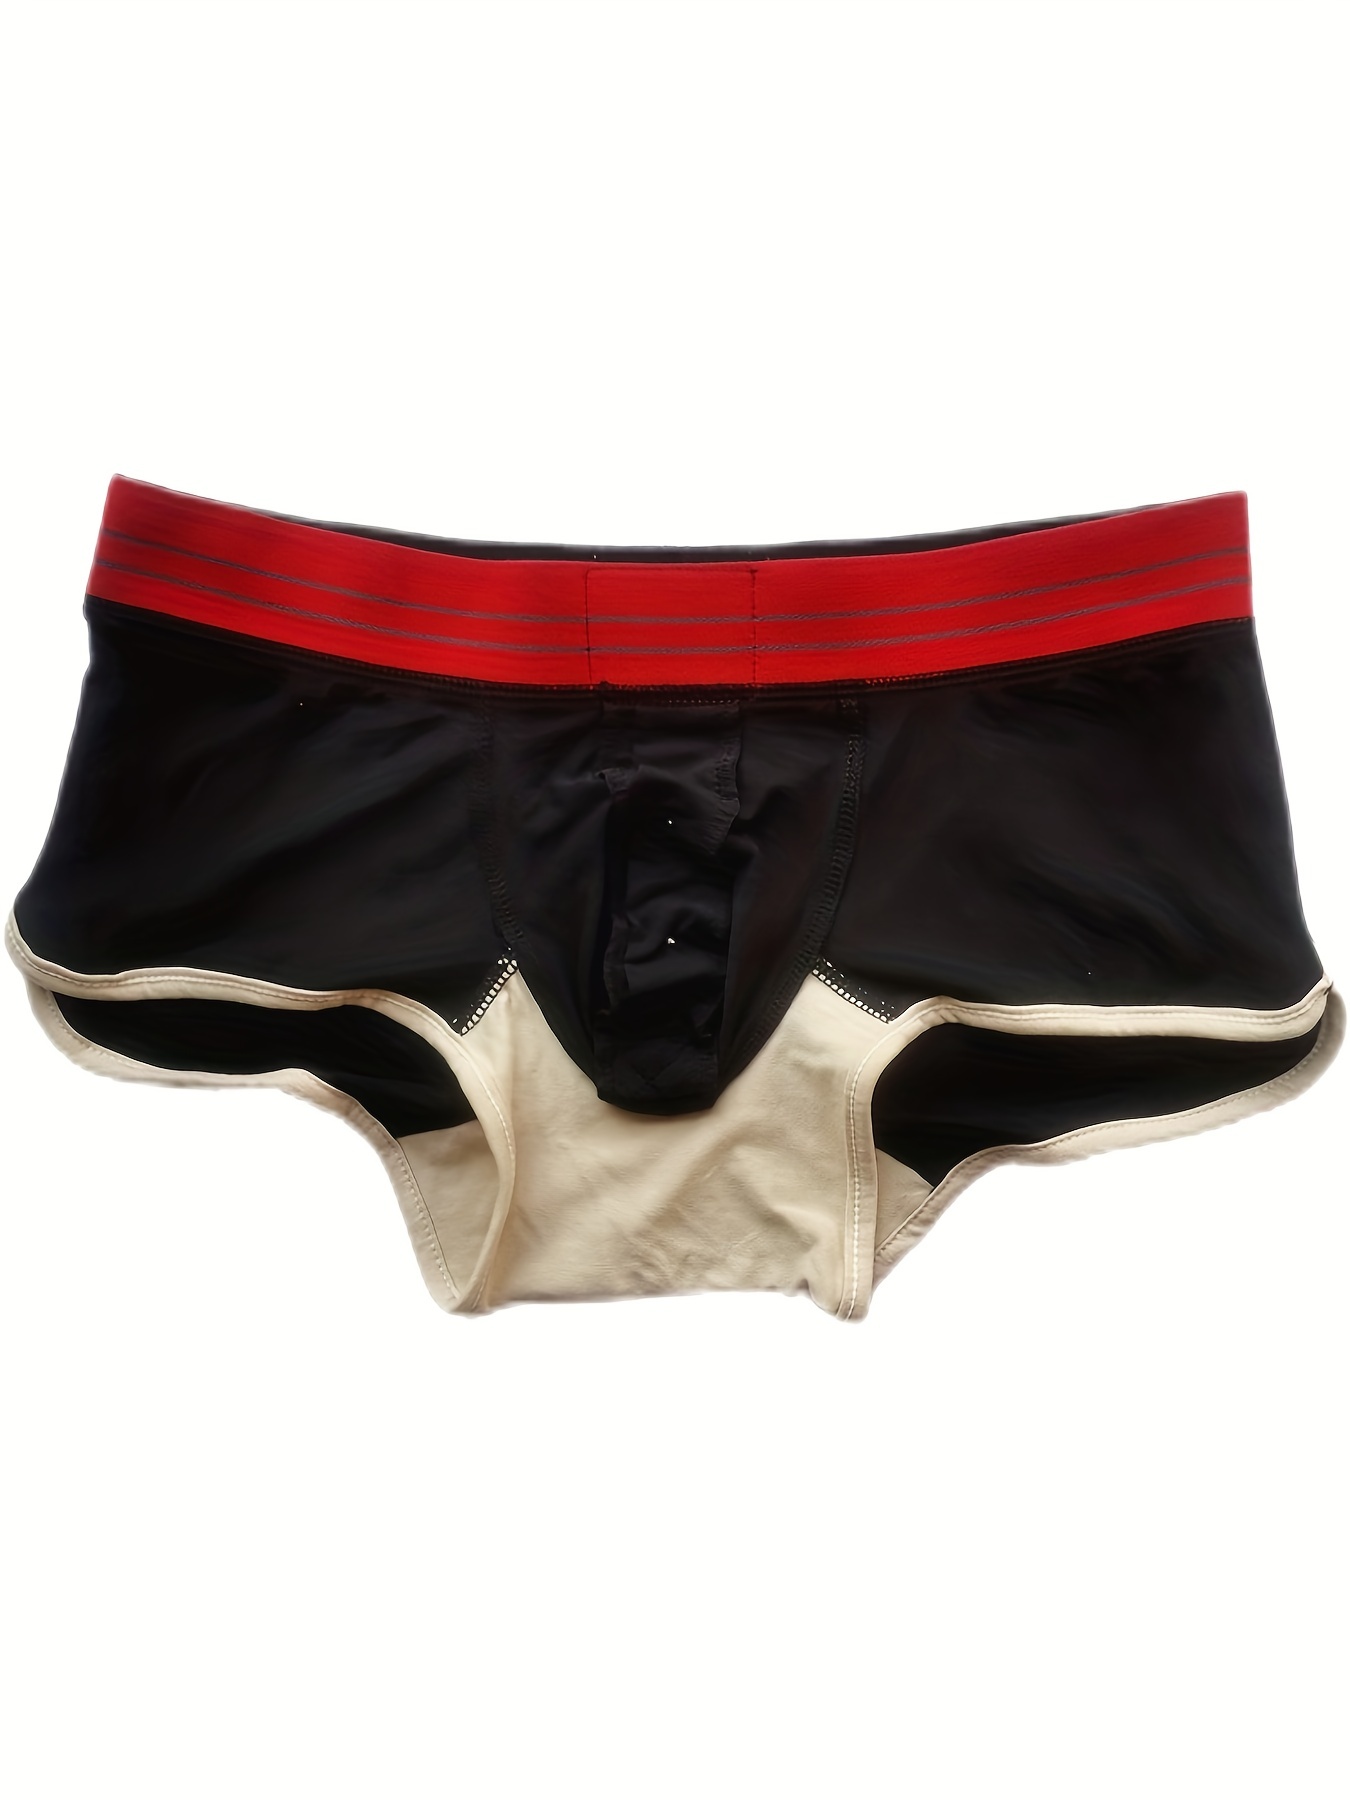 Men's Boxer Briefs Open Front Pouch Shorts Underwear Sexy Lingerie  Underpants~